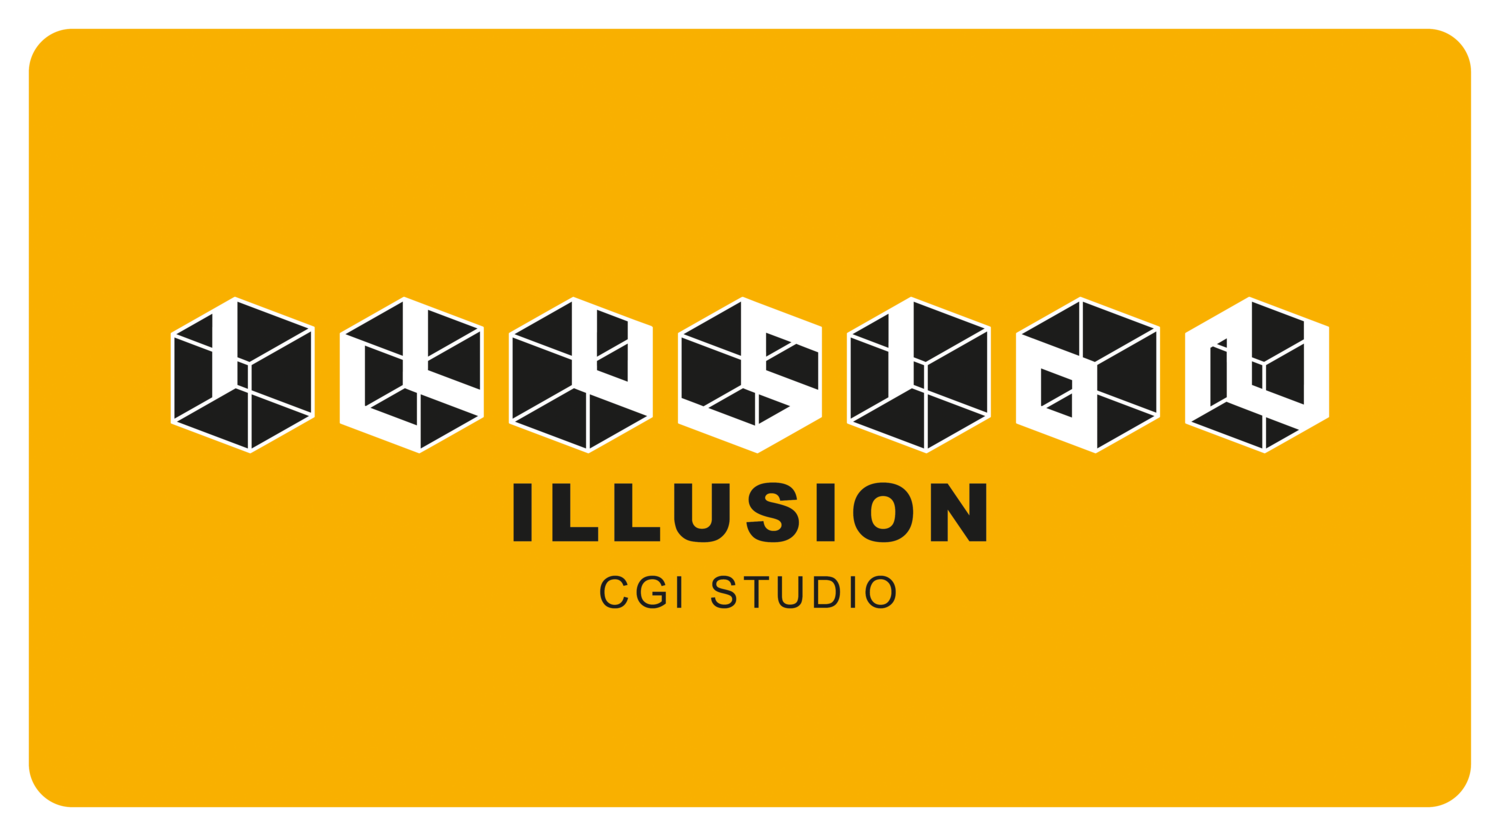 ILLUSION CGI STUDIO